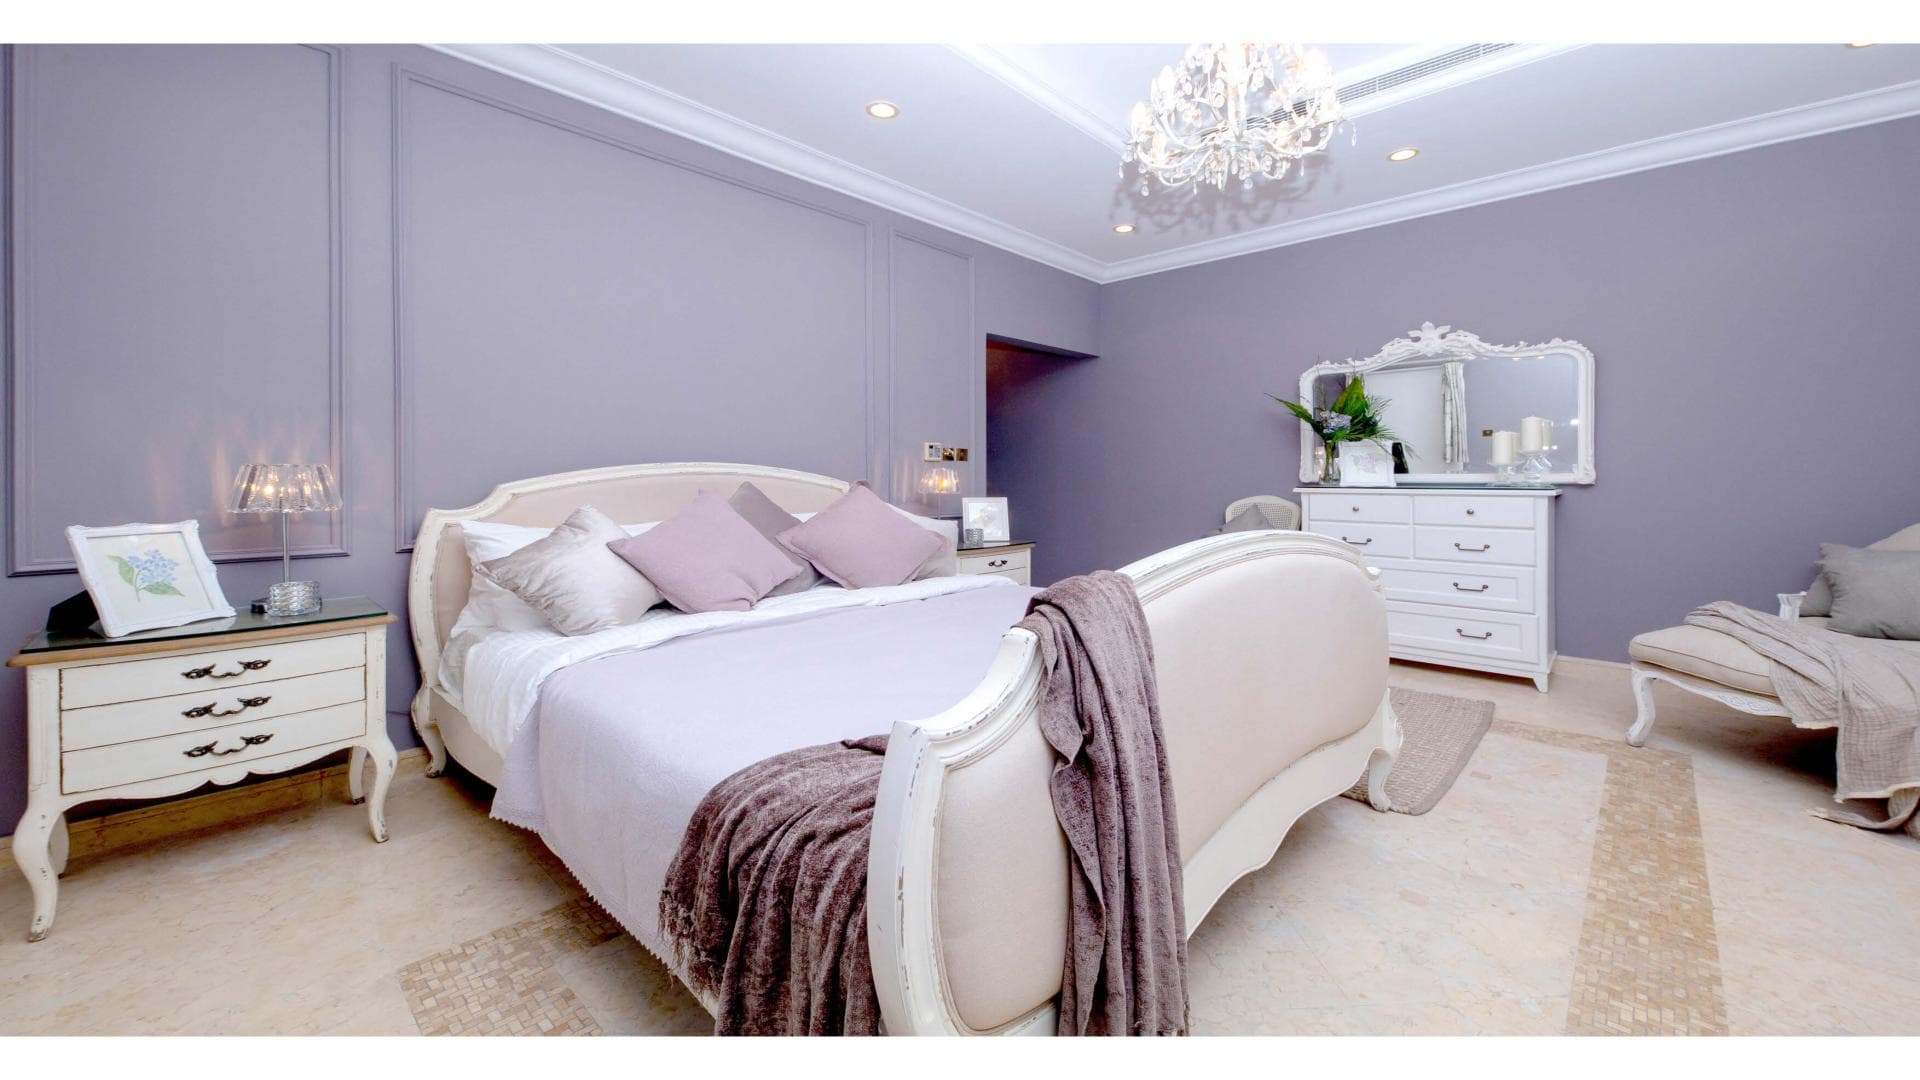 7 Bedroom Villa For Rent Al Reem 2 Lp35747 23e0e881585f2e00.jpg